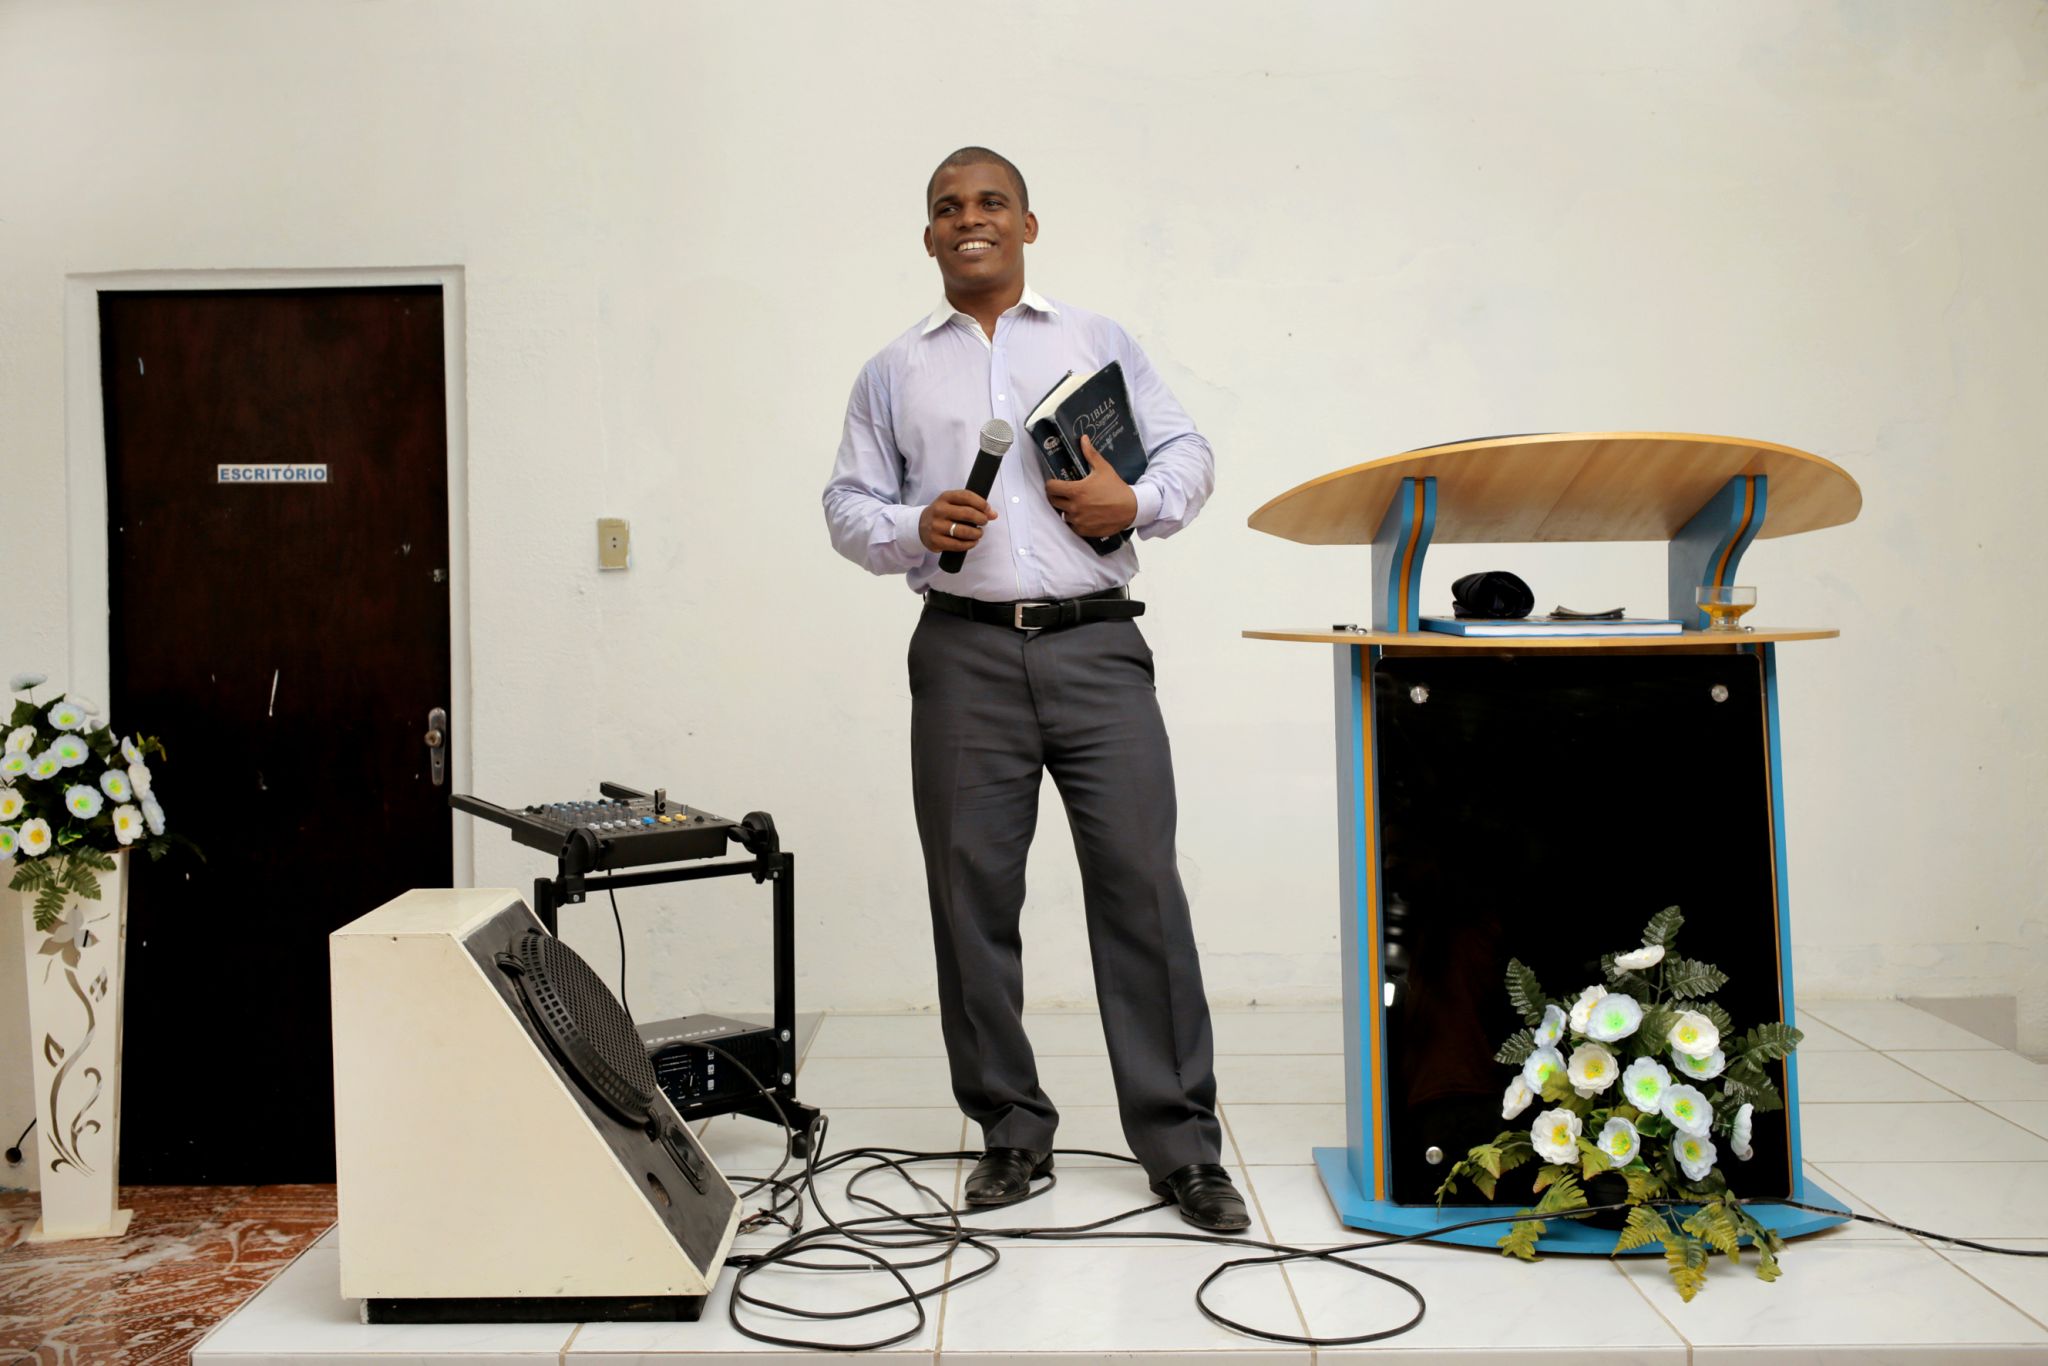 O pastor Caetano, 27, prega na Igreja Internacional da Graça de Deus, da cidade de Jaboatão, há 7 anos